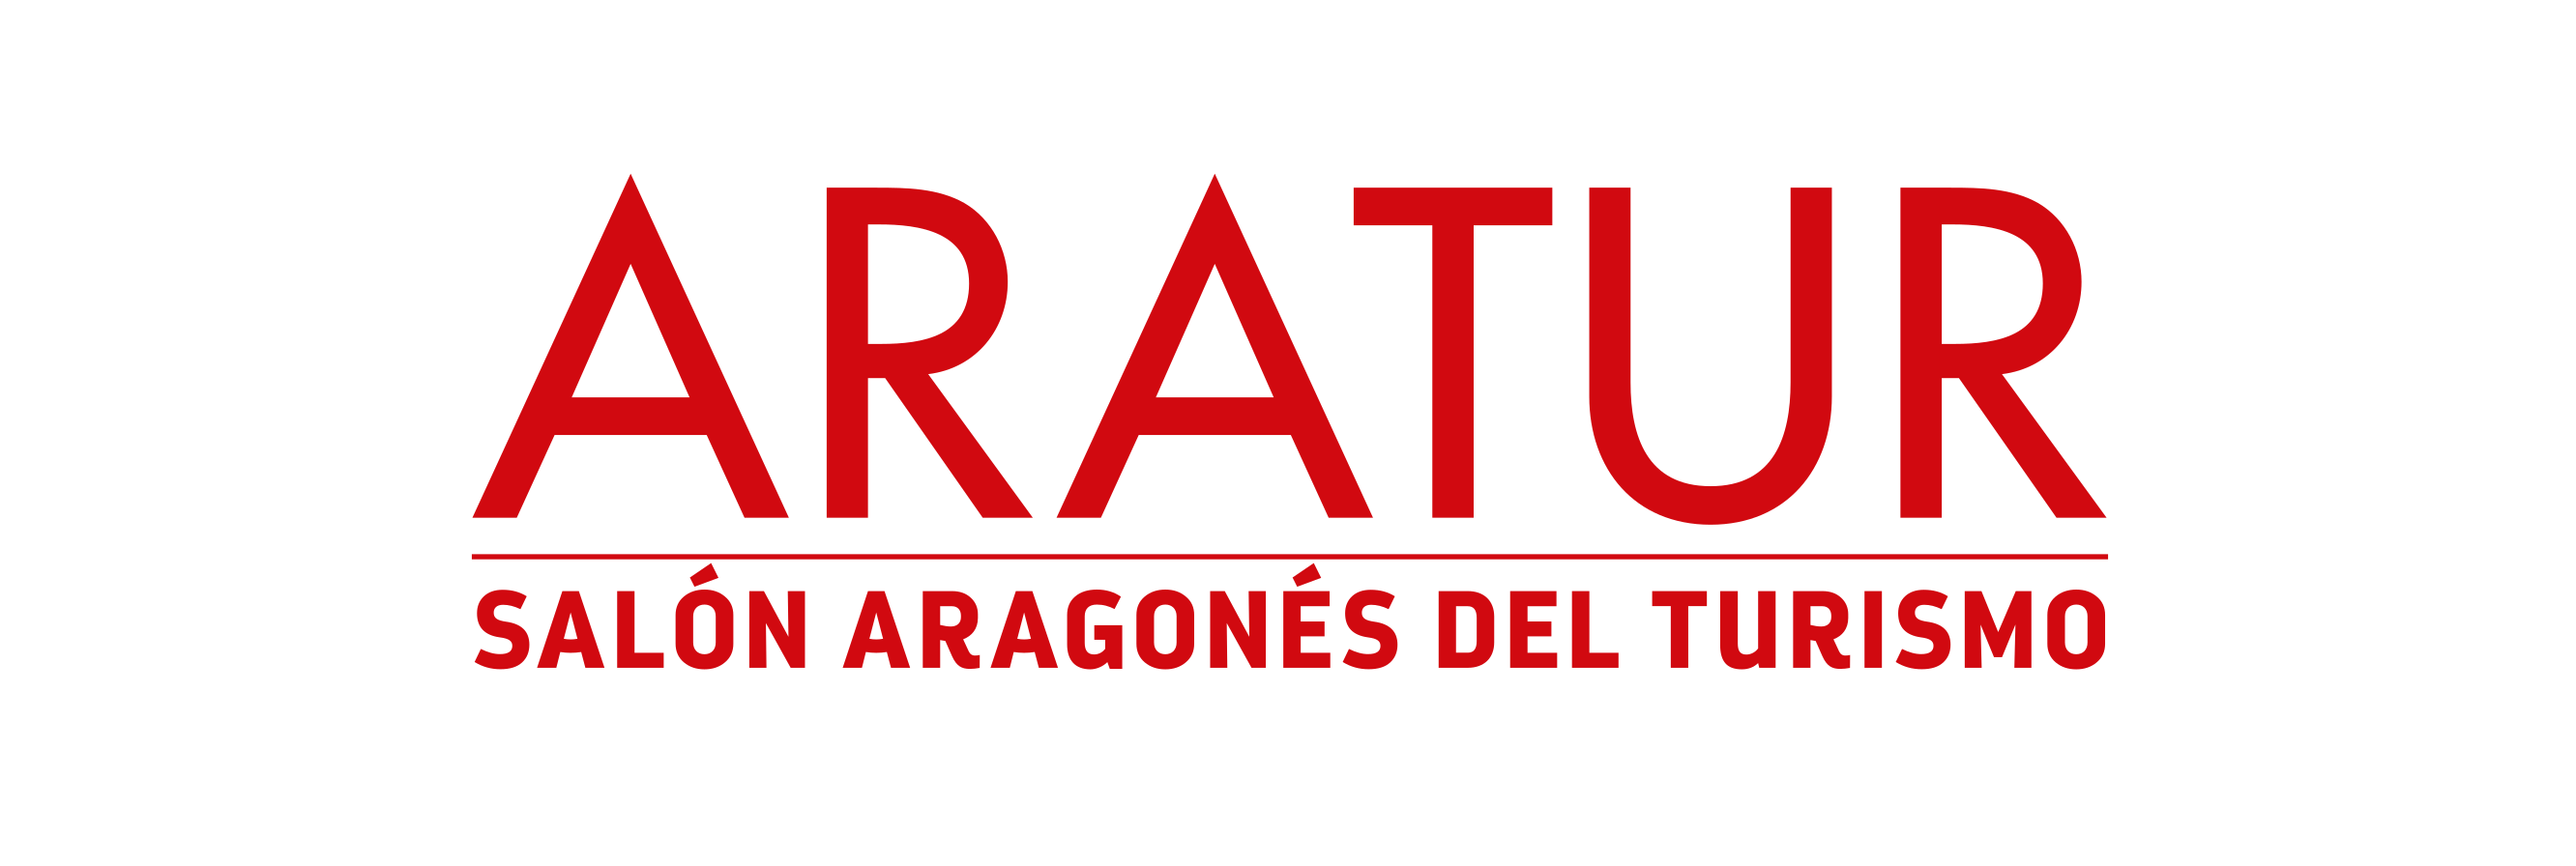 ARATUR 2021 - Salón Aragonés del Turismo en Zaragoza